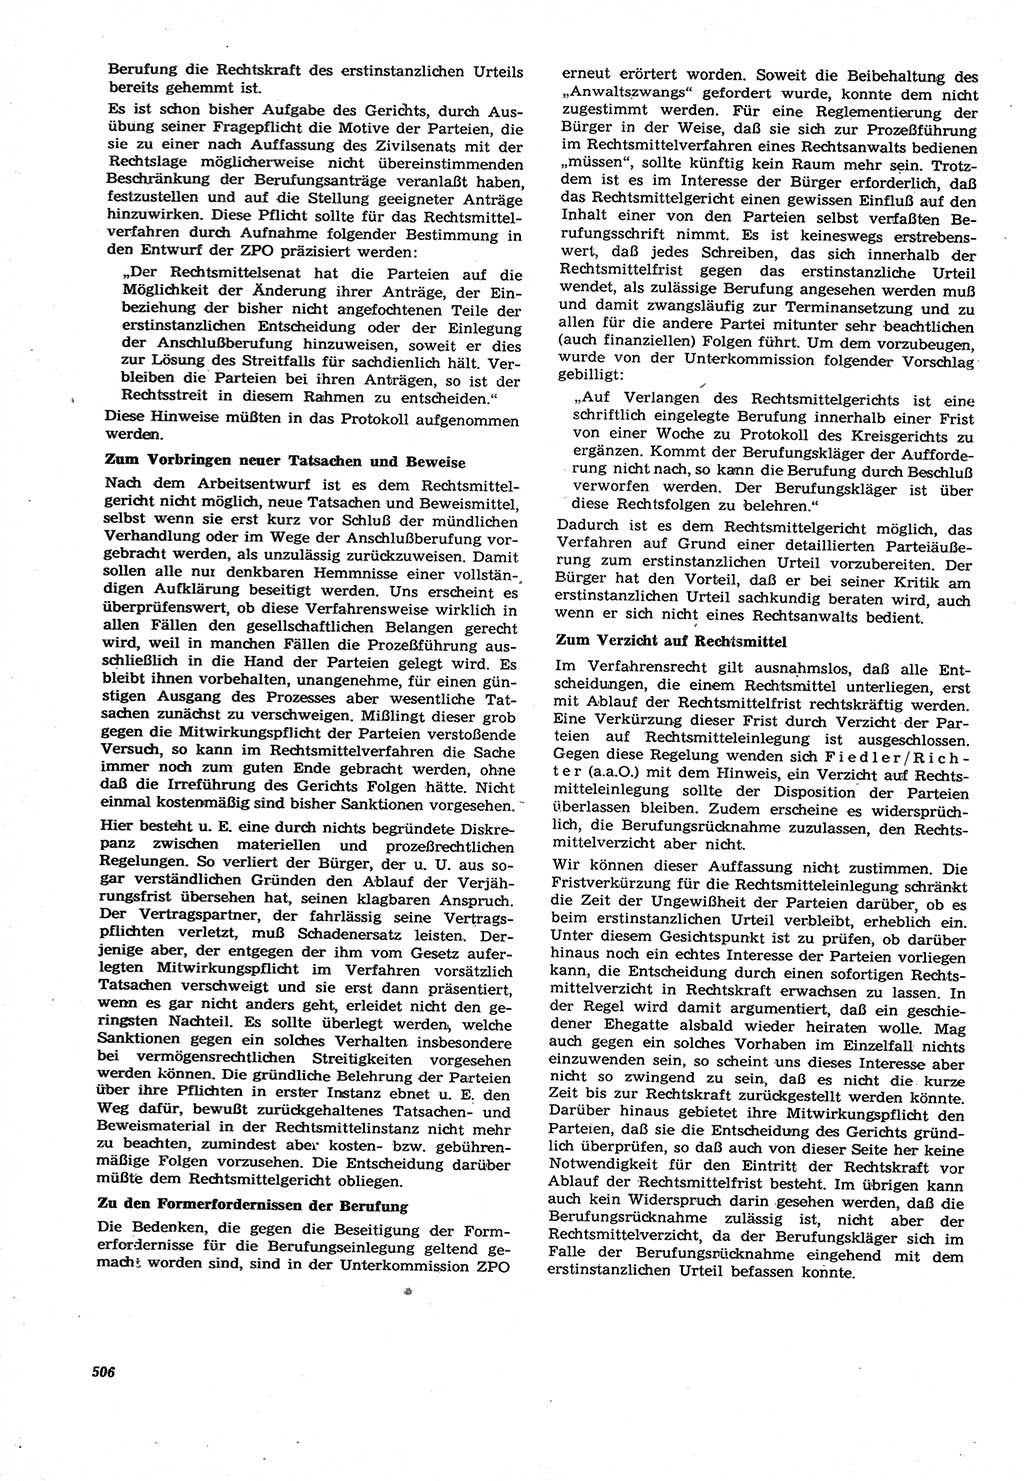 Neue Justiz (NJ), Zeitschrift für Recht und Rechtswissenschaft [Deutsche Demokratische Republik (DDR)], 21. Jahrgang 1967, Seite 506 (NJ DDR 1967, S. 506)